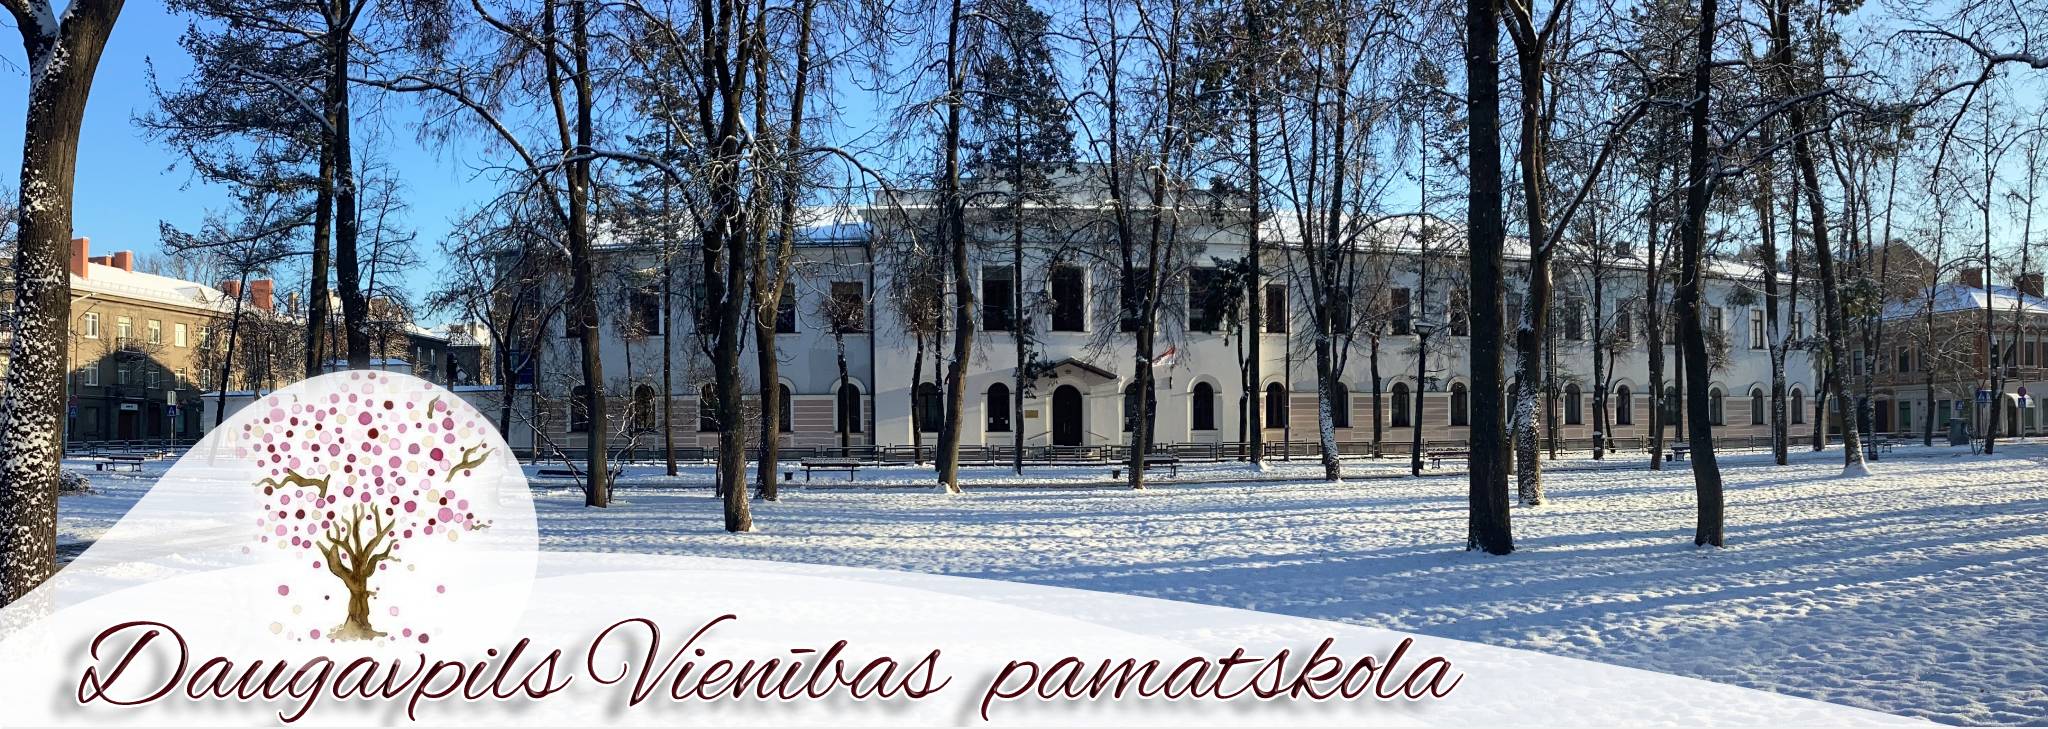 Dvpsk_Banner_winter